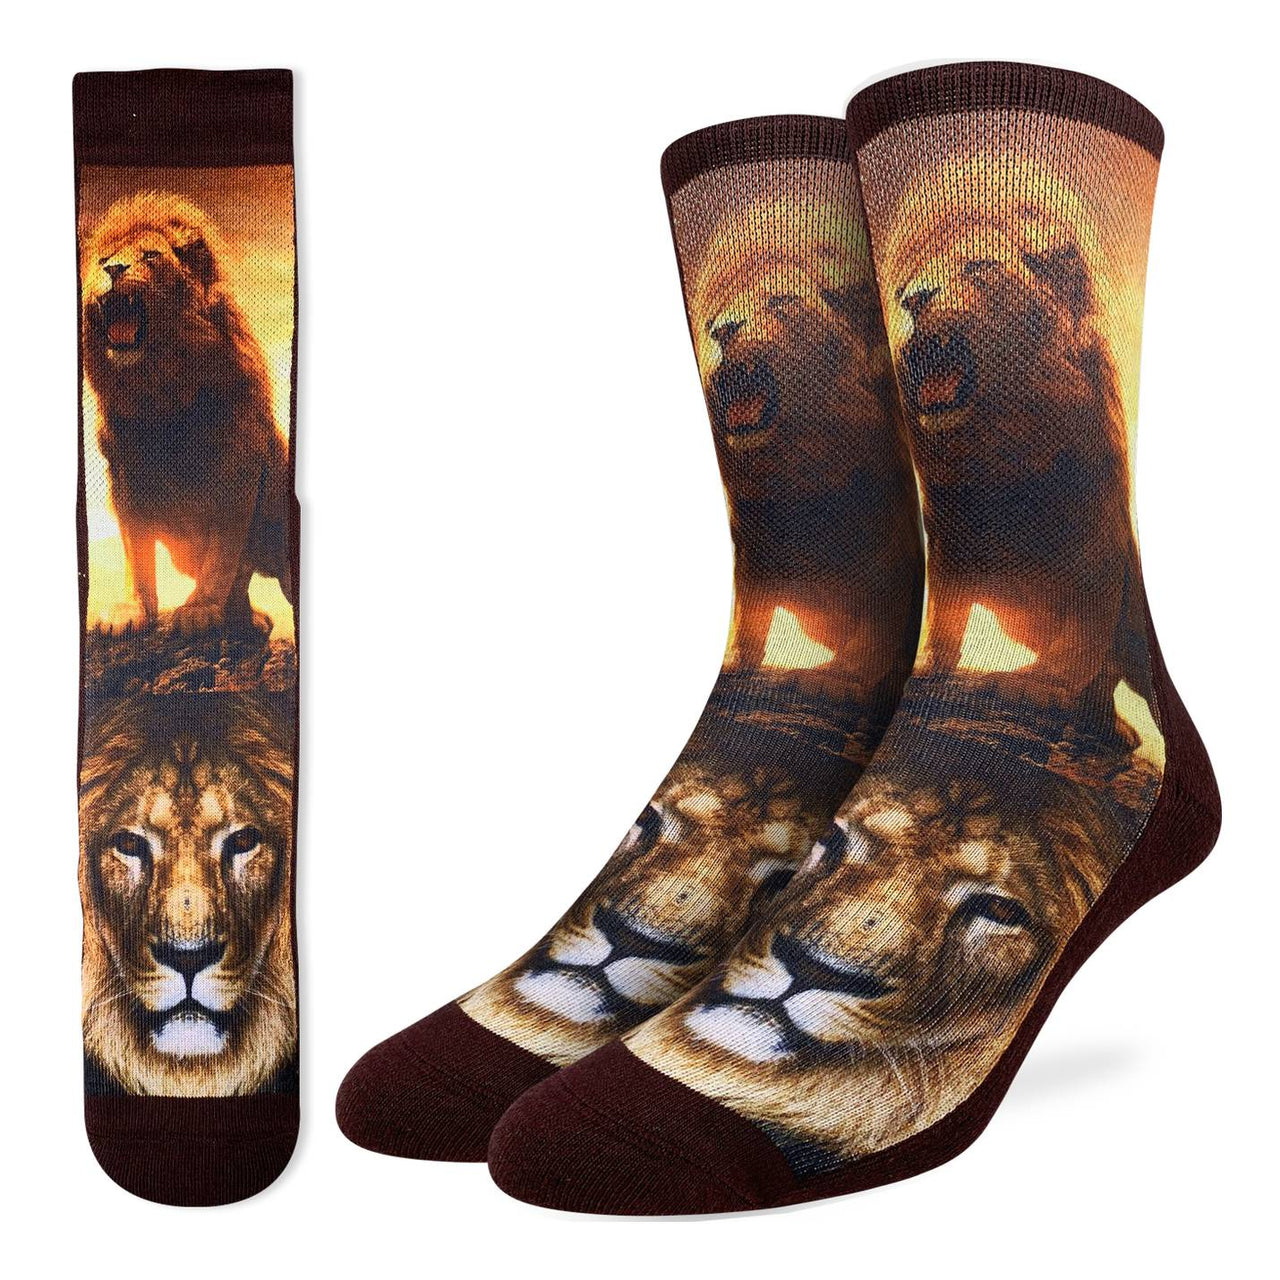 Men's Socks - Lions